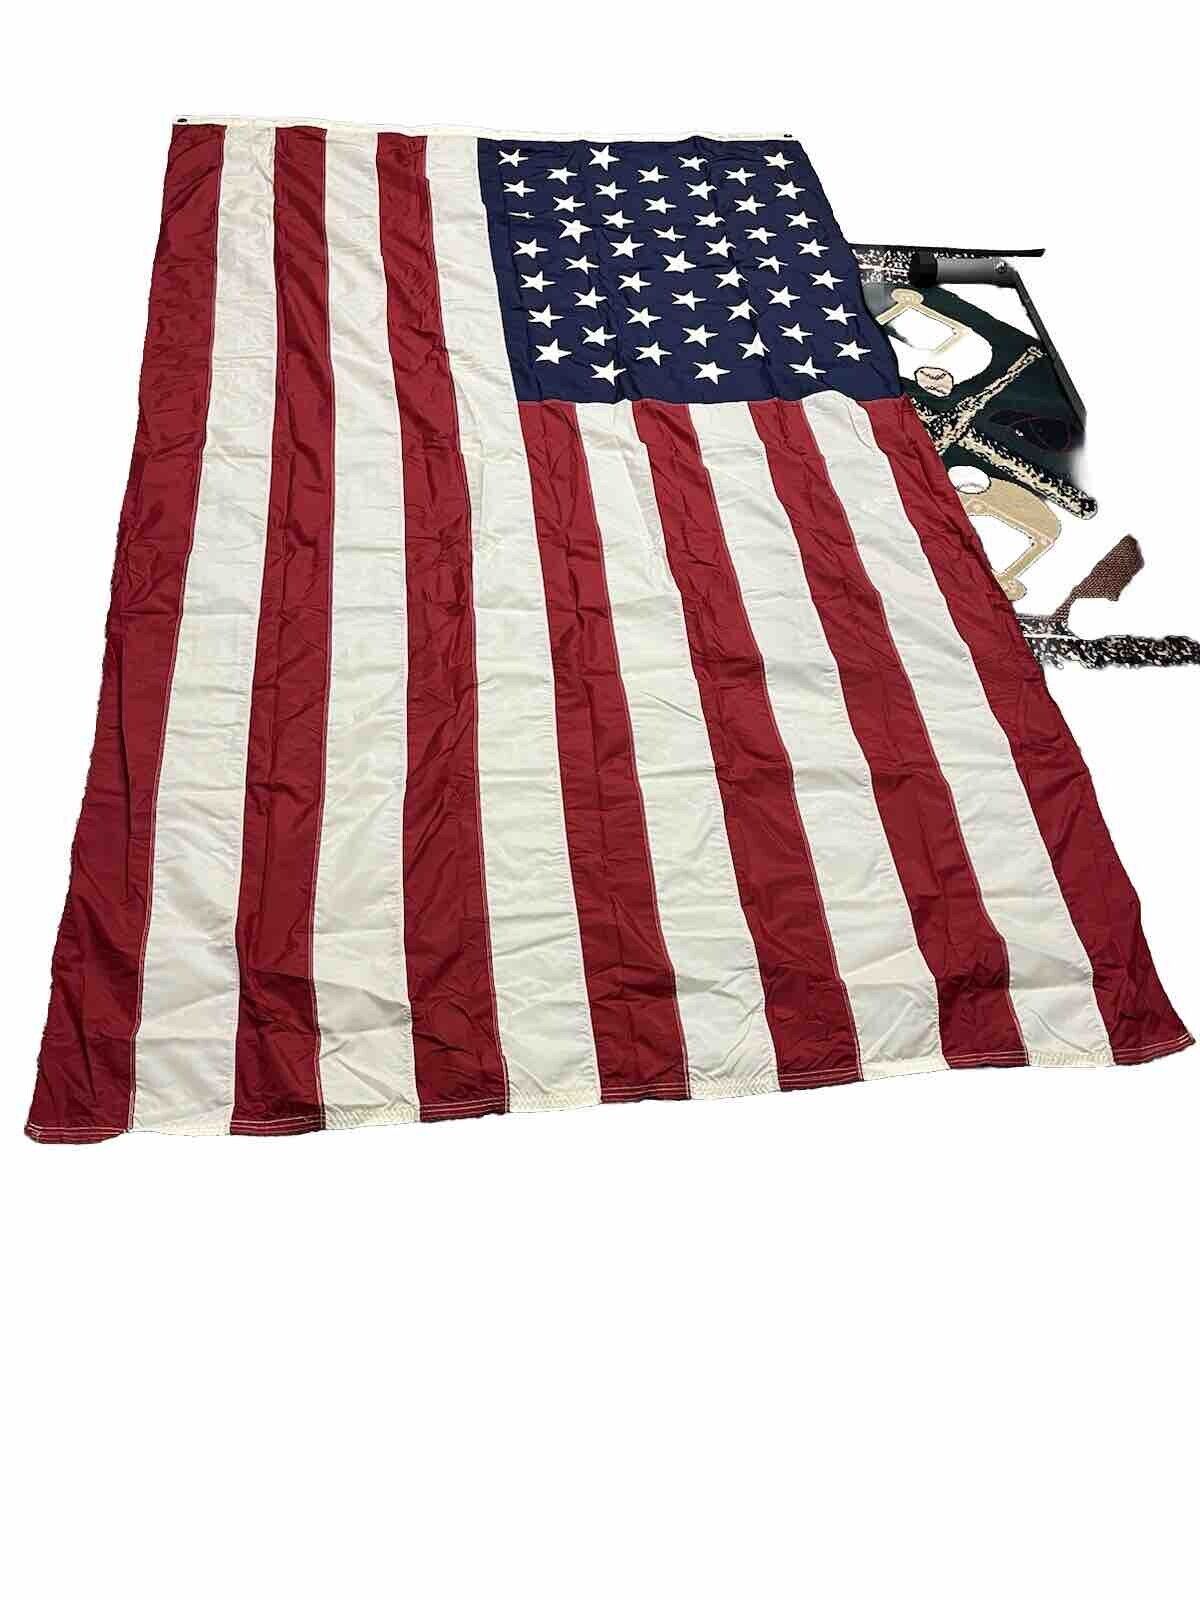 Vintage 49 Star 5’ X 8’ U.S. Flag